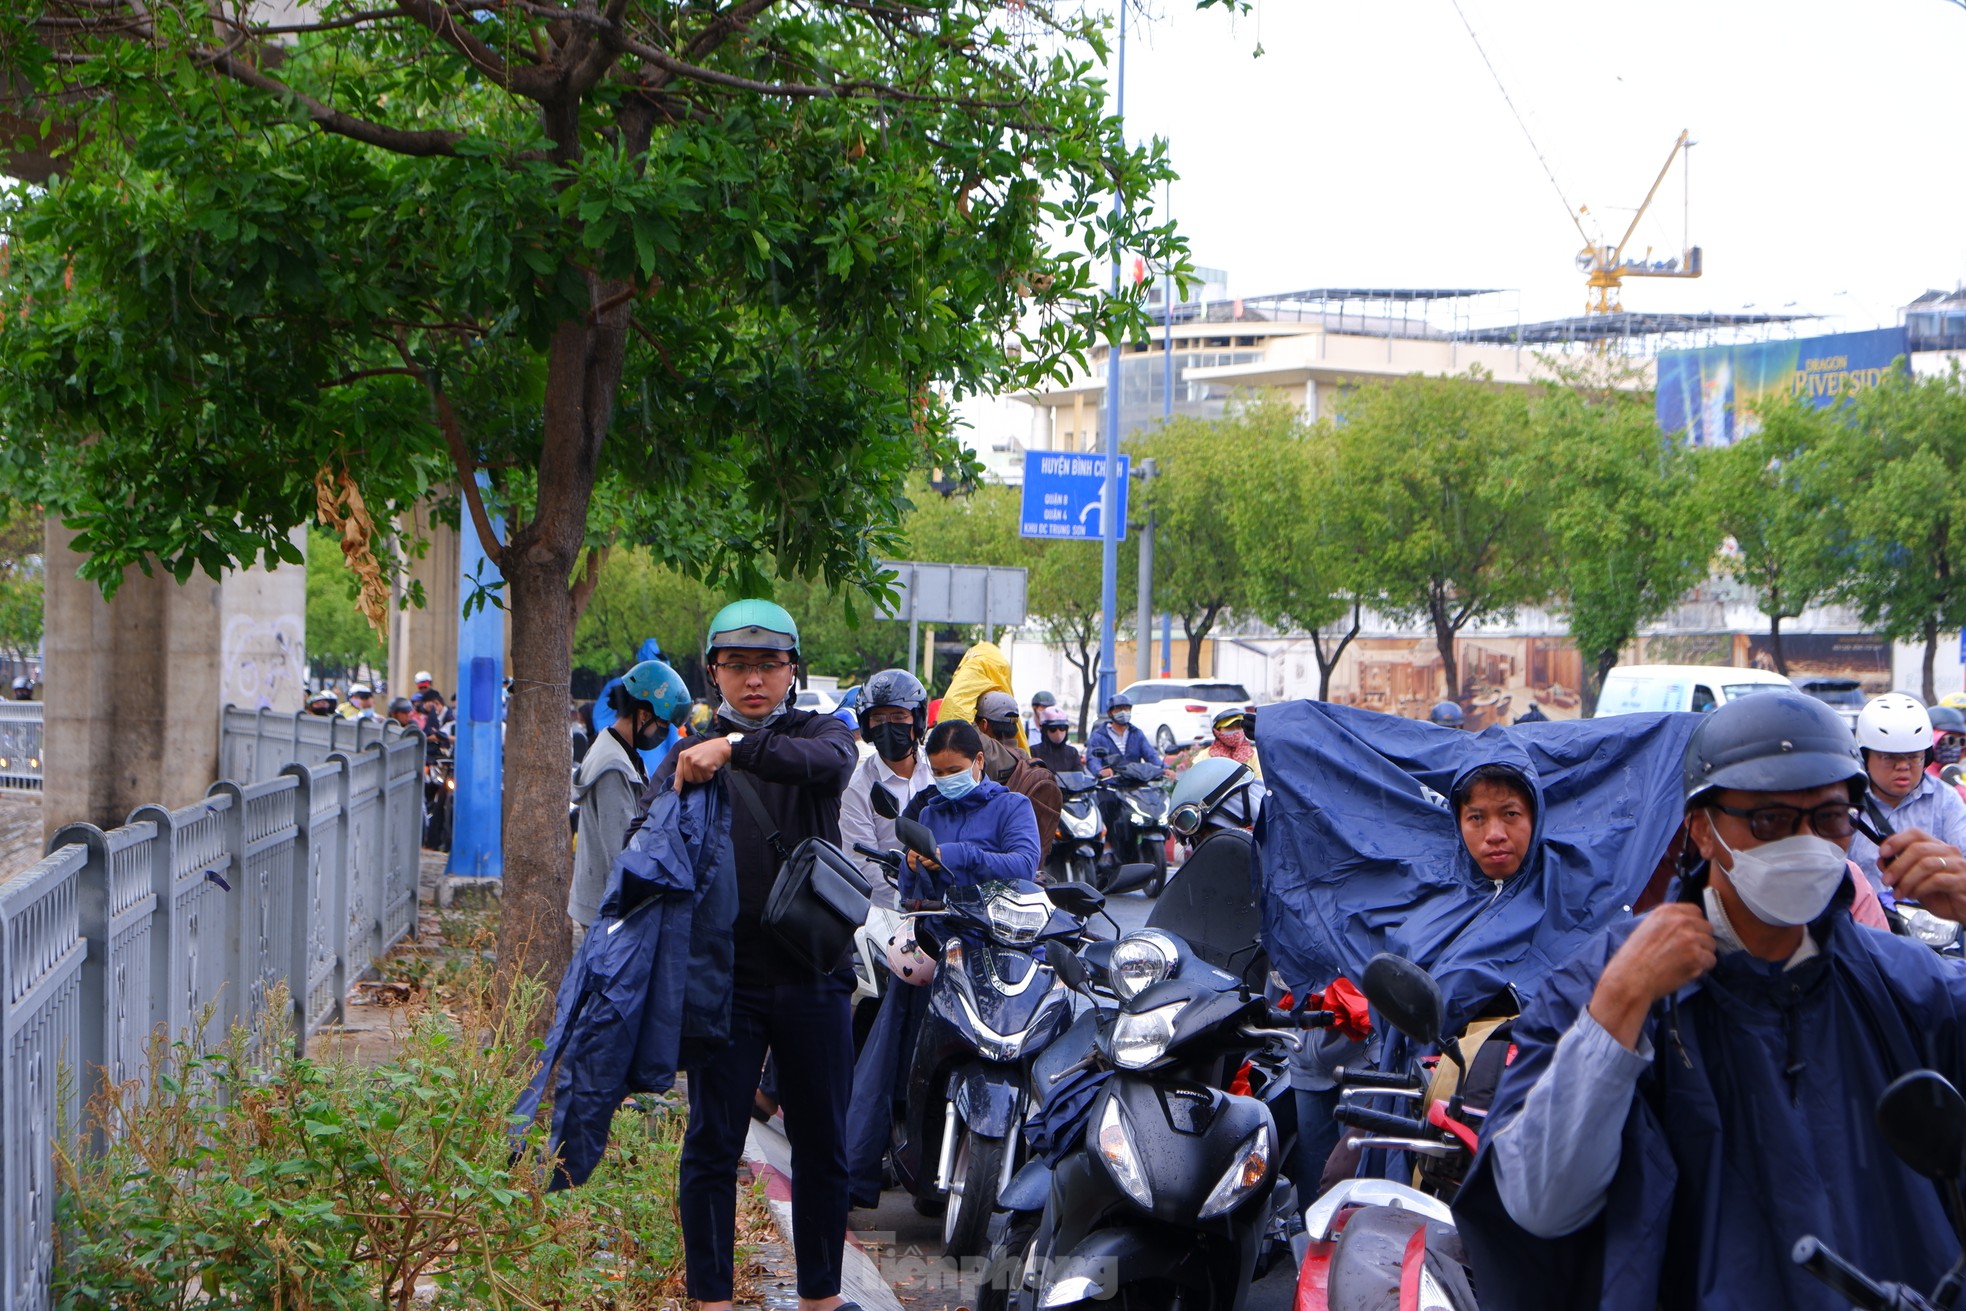 TPHCM bất chợt 'mưa vàng', nhiều người bị té ngã vì đường trơn ảnh 1